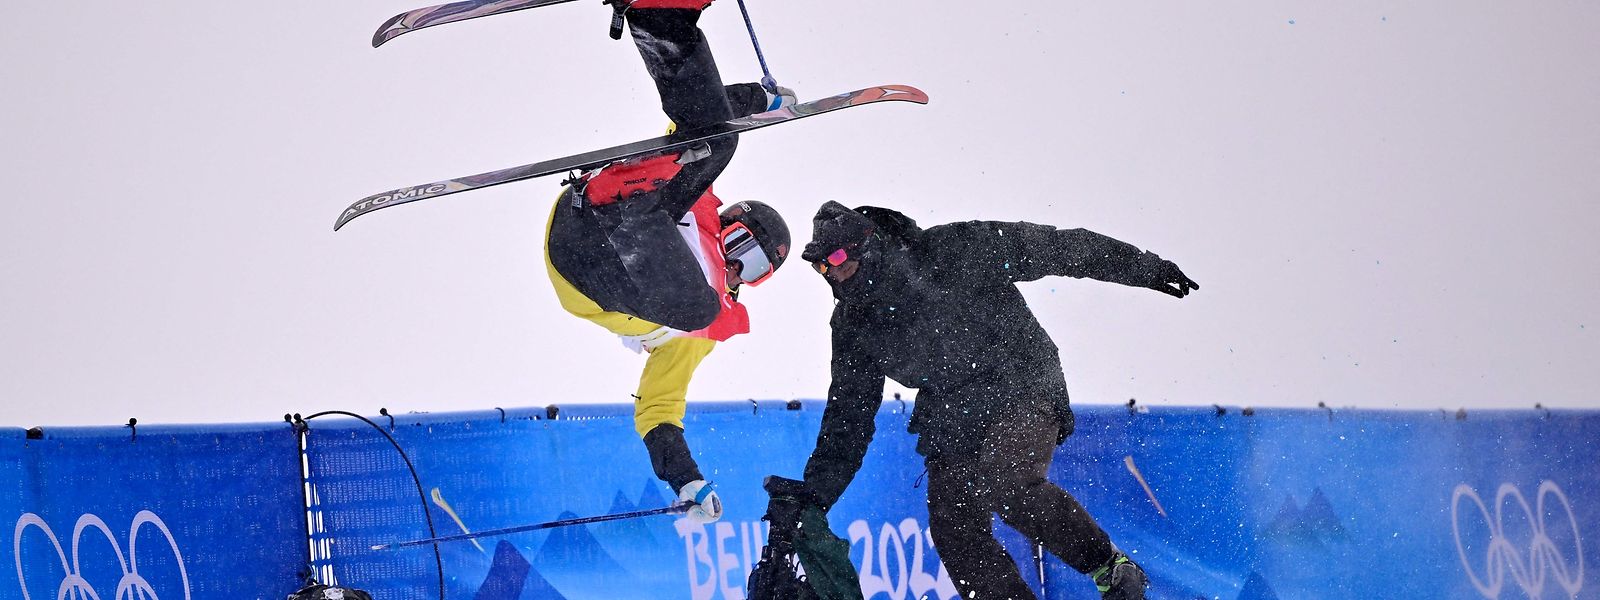 Der Freestyle-Skifahrer und der Kameramann blieben unverletzt.